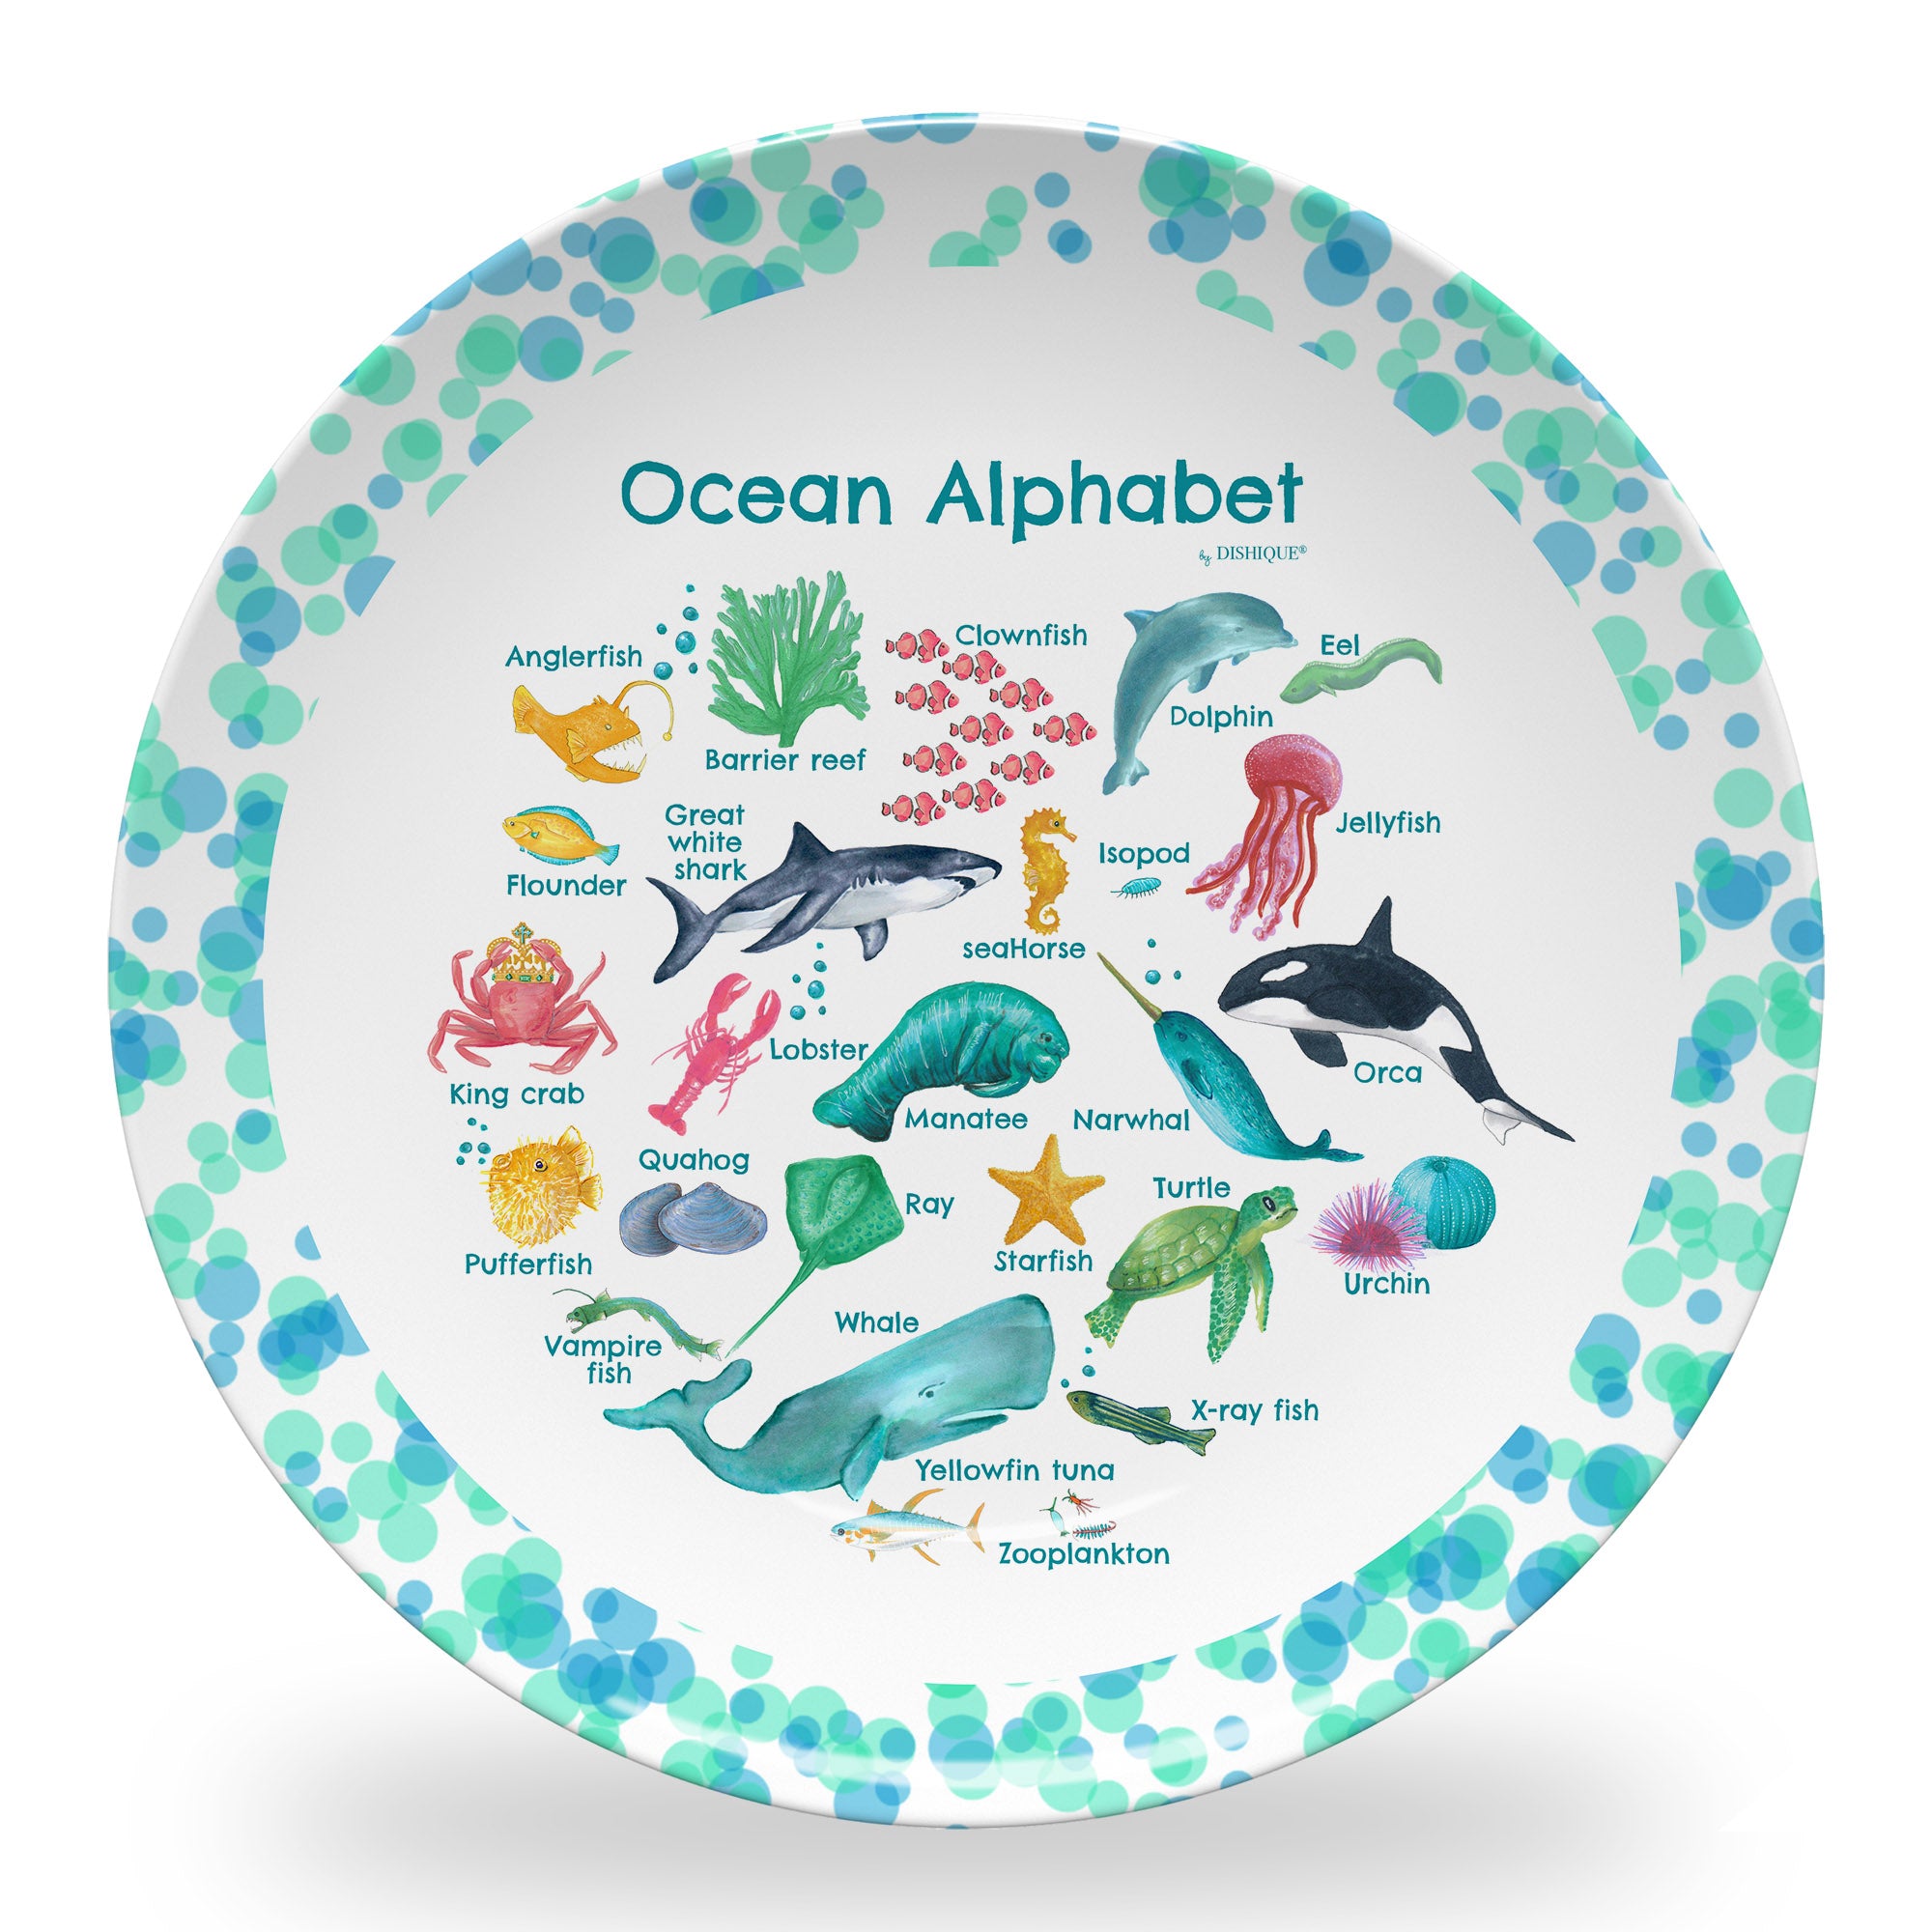 Ocean Alphabet 10" Plastic Plate